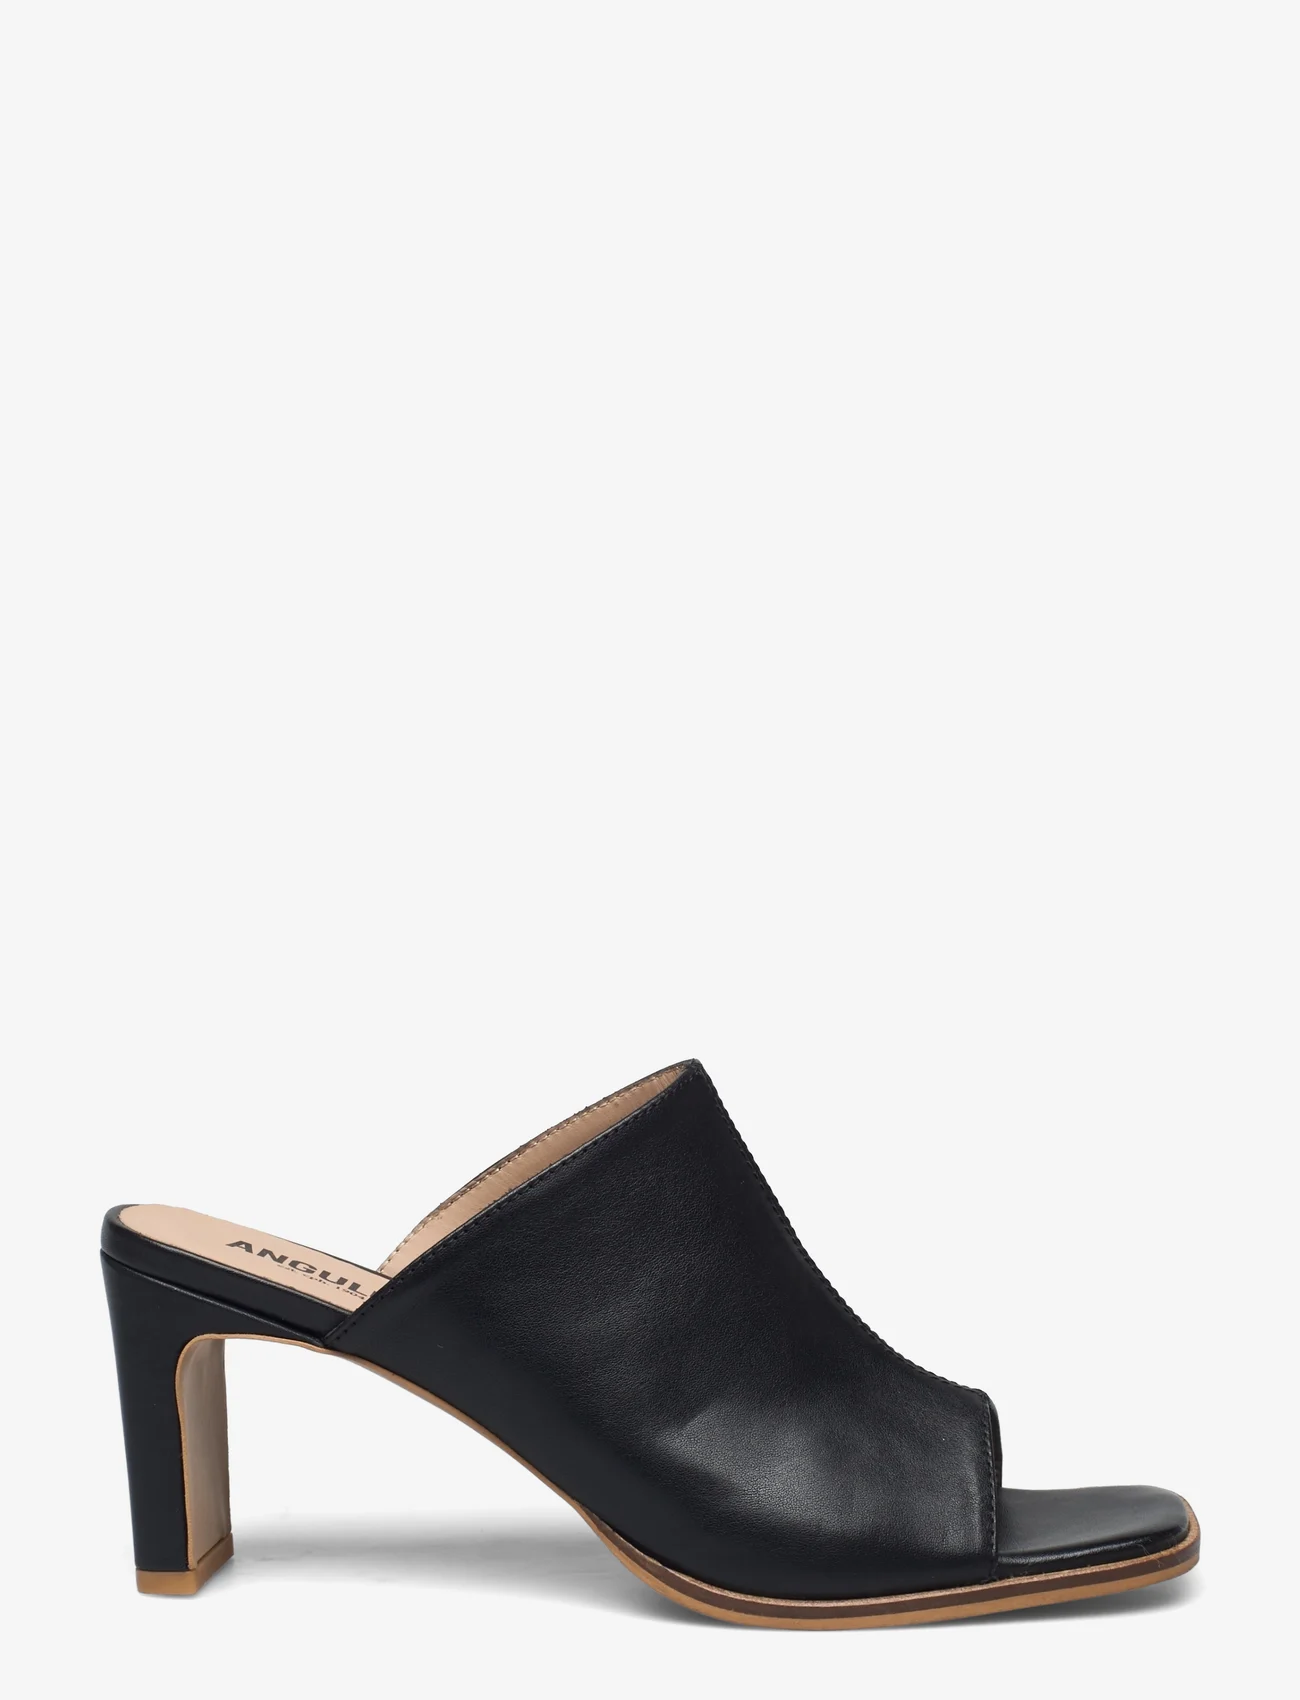 ANGULUS - Sandals - Block heels - buty z odkrytą piętą na obcasach - 1604 black - 1